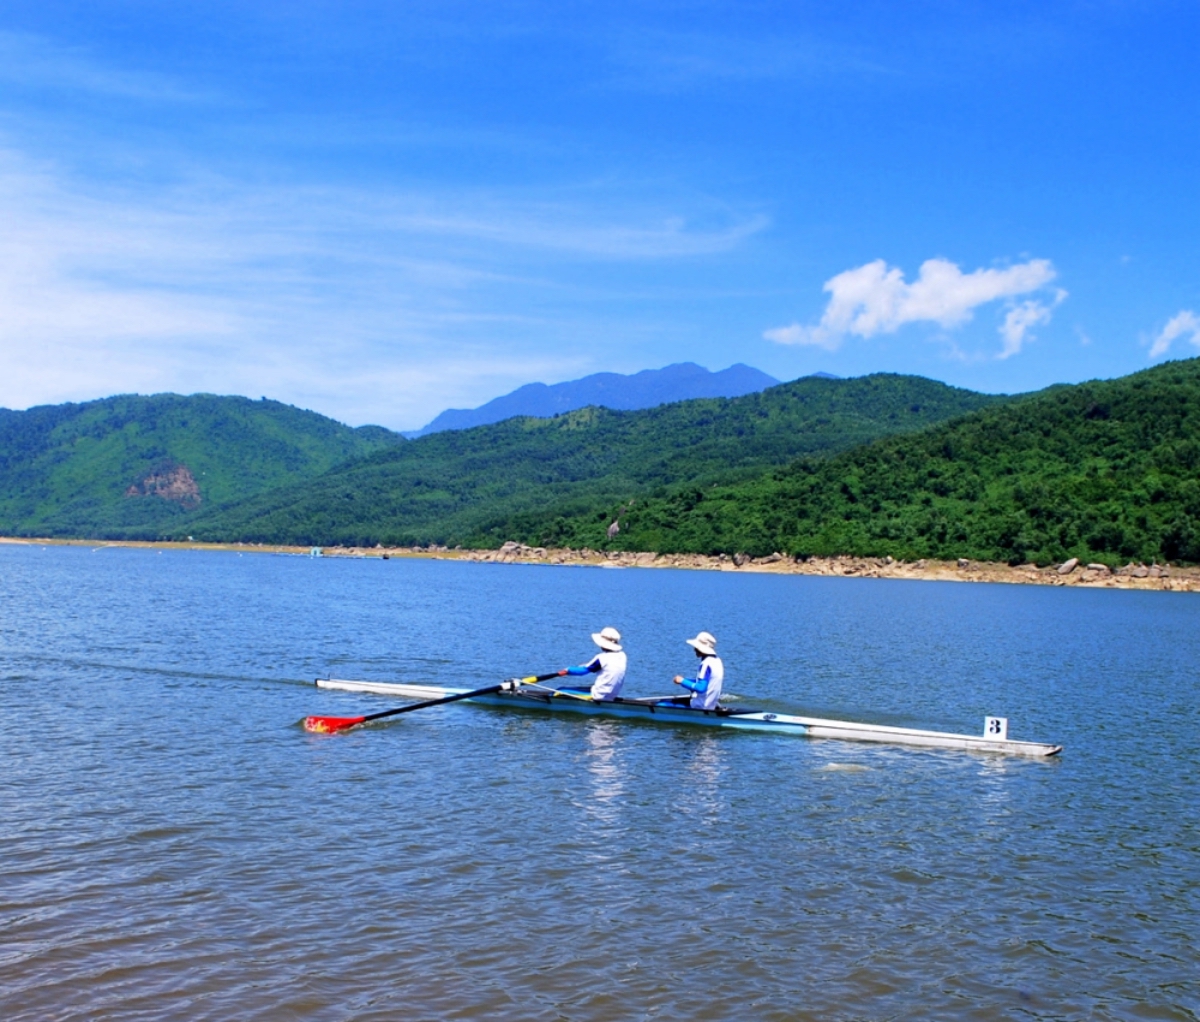 Hồ Đồng Xanh cảnh đẹp như tranh - 6